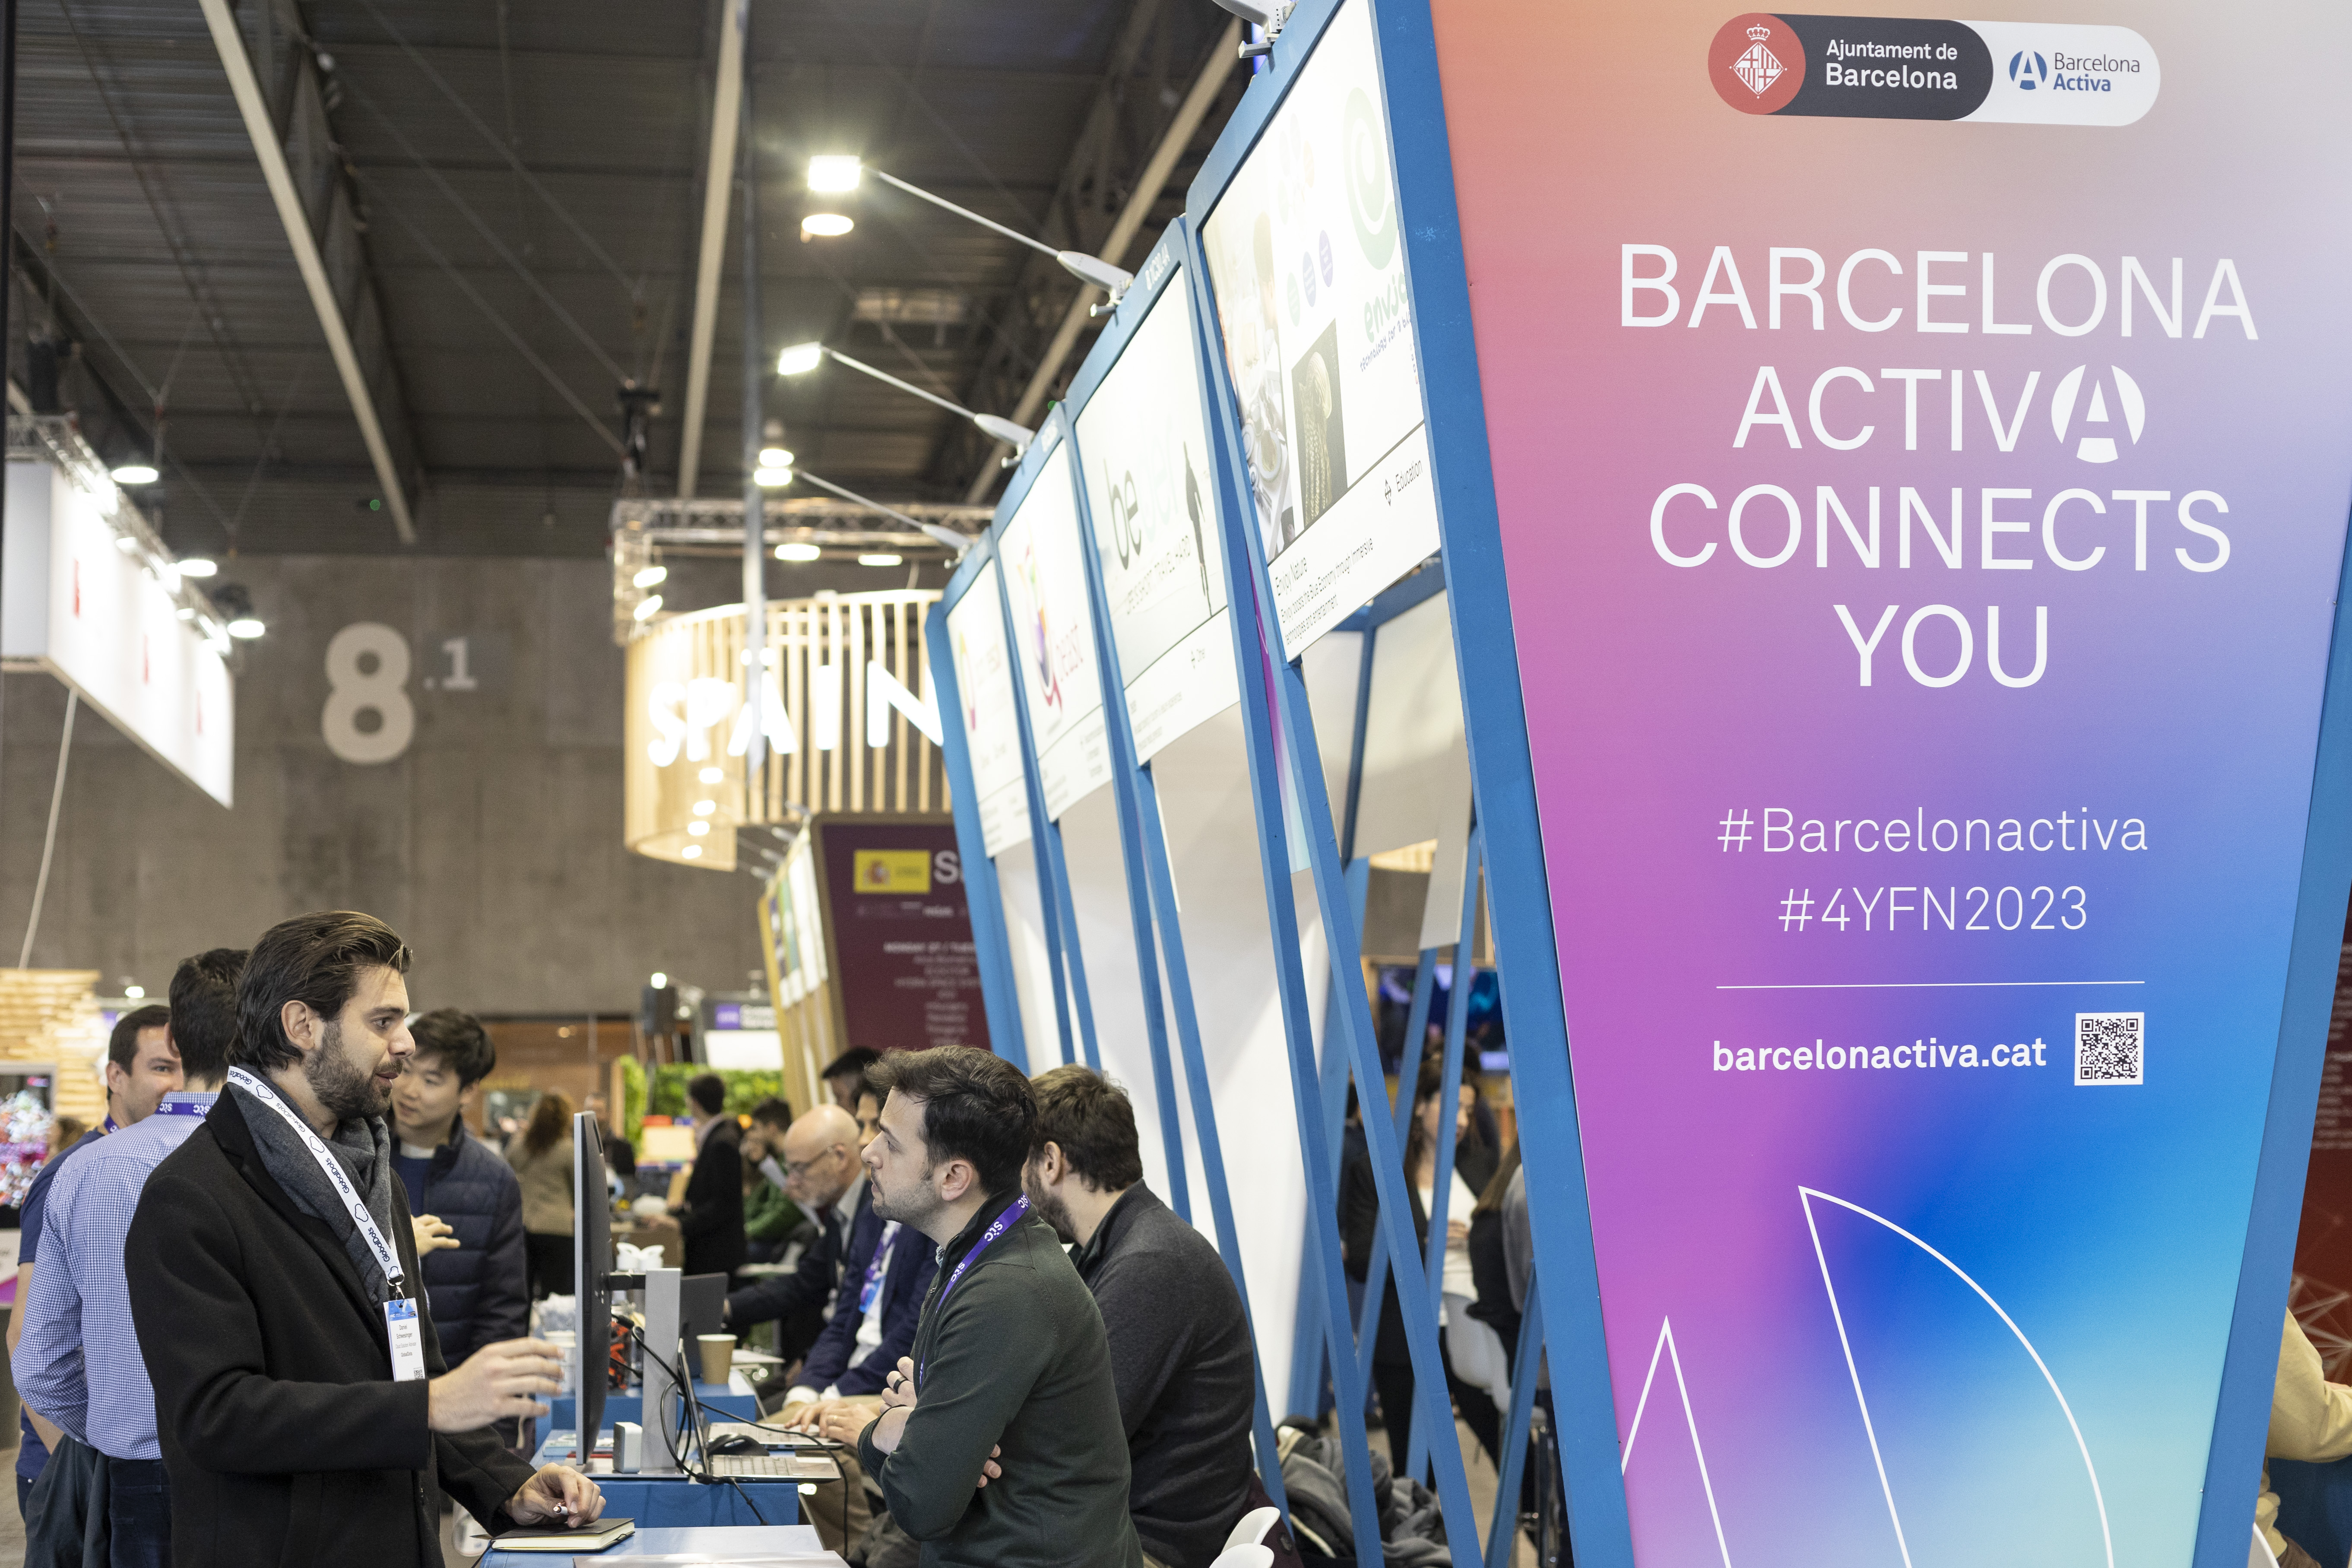 Barcelona Activa formarà part del congrés 4YFN-MWC del 26 al 29 de febrer per impulsar l’ecosistema emprenedor de la ciutat  